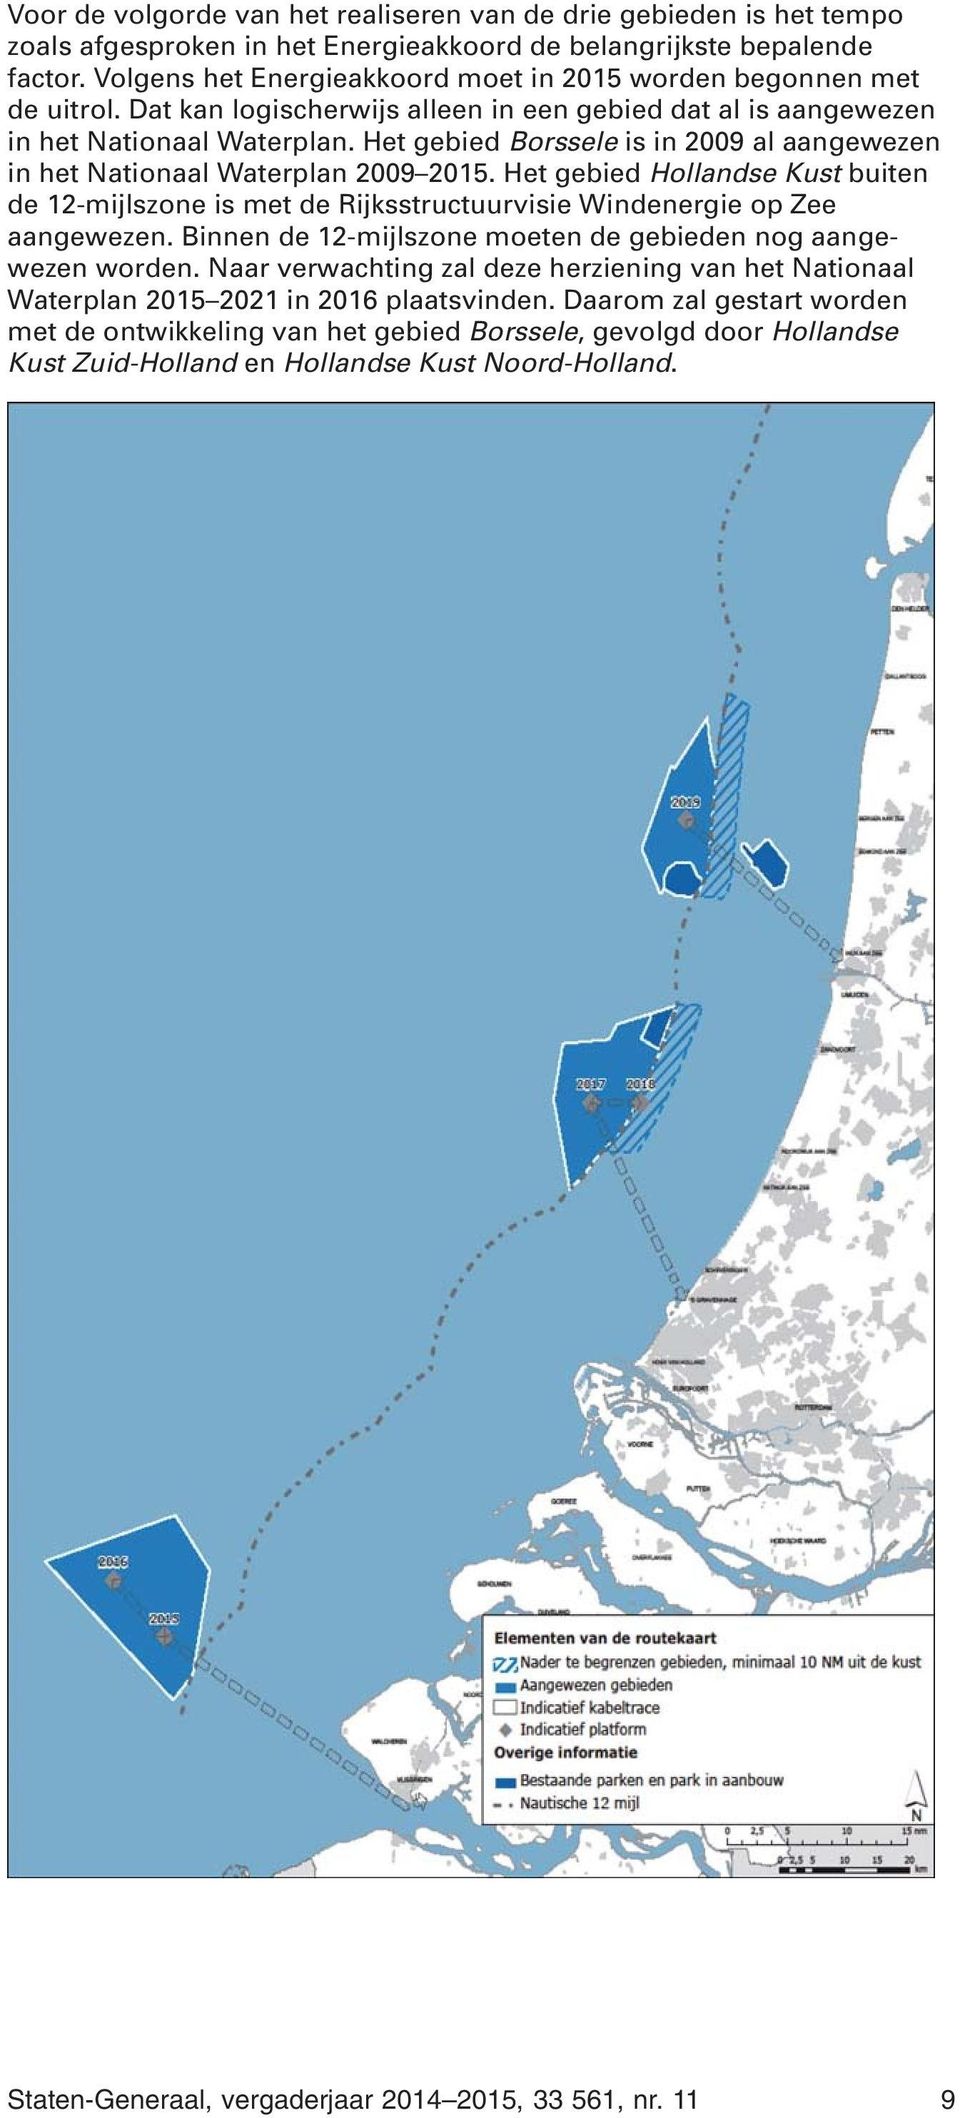 Het gebied Borssele is in 2009 al aangewezen in het Nationaal Waterplan 2009 2015. Het gebied Hollandse Kust buiten de 12-mijlszone is met de Rijksstructuurvisie Windenergie op Zee aangewezen.